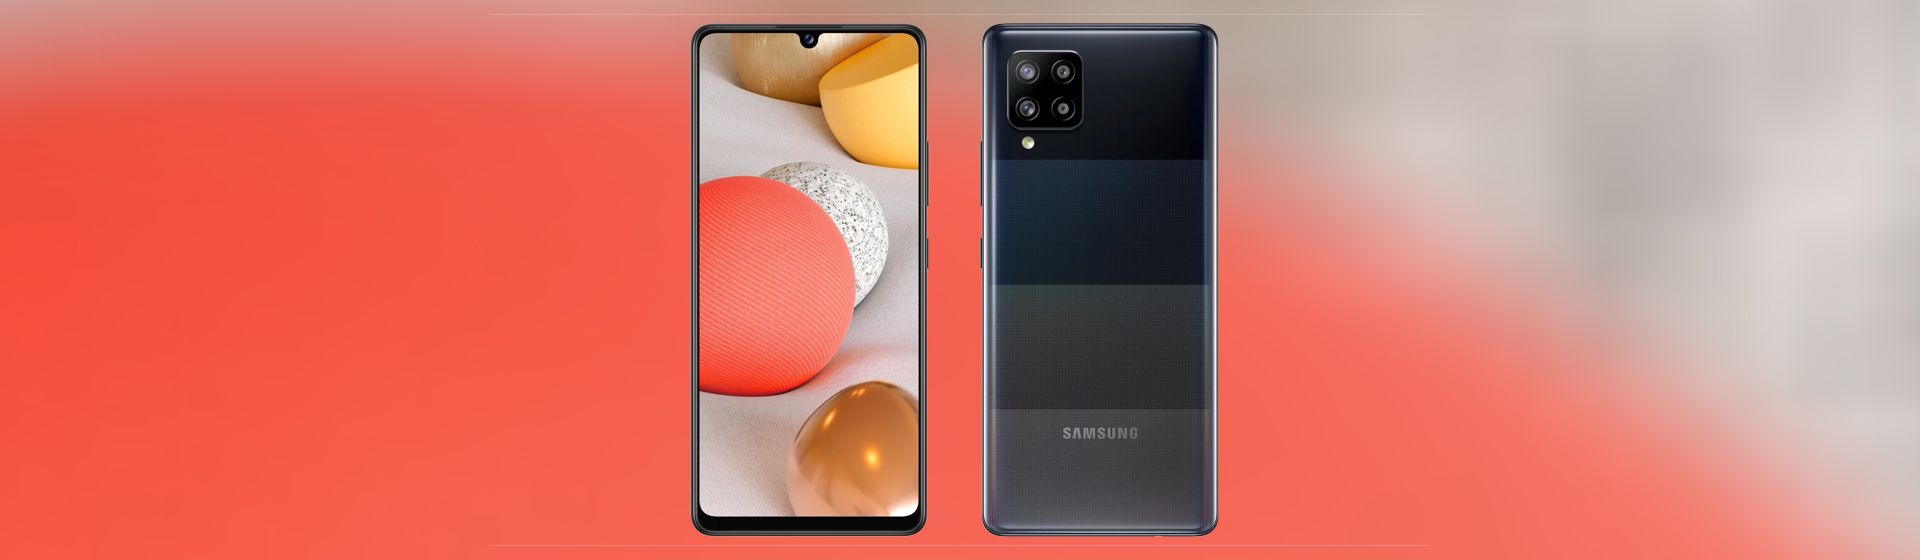 Capa do post: Samsung lança o Galaxy A42 com 5G; veja sua ficha técnica e preços